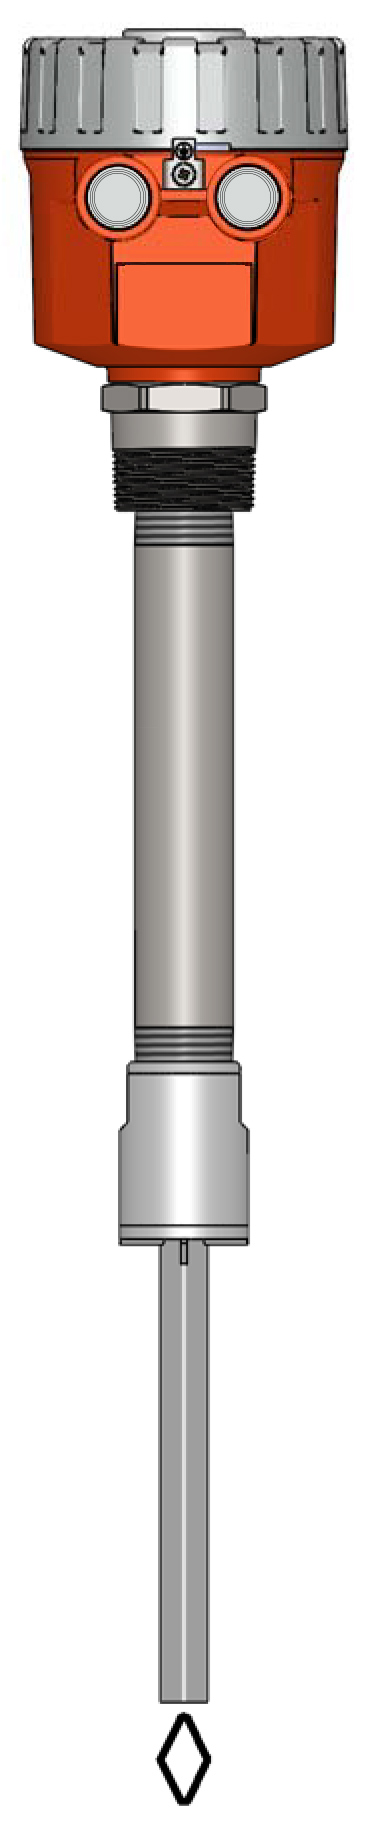 Model PZP Vibratory Level Sensor - Pipe Ext Probe